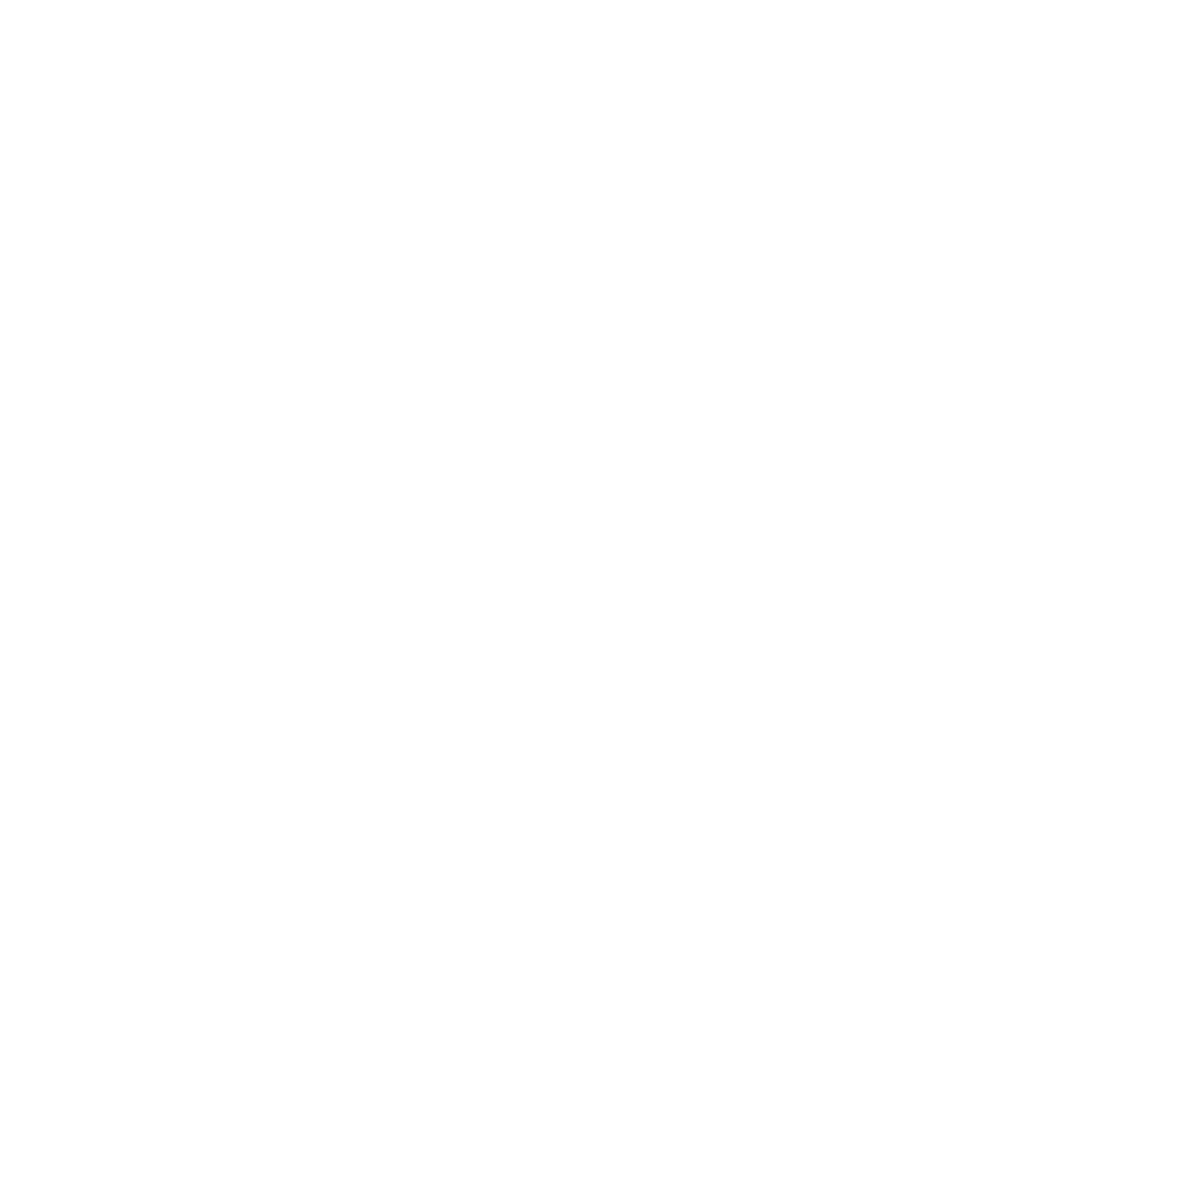 Rev & Regs